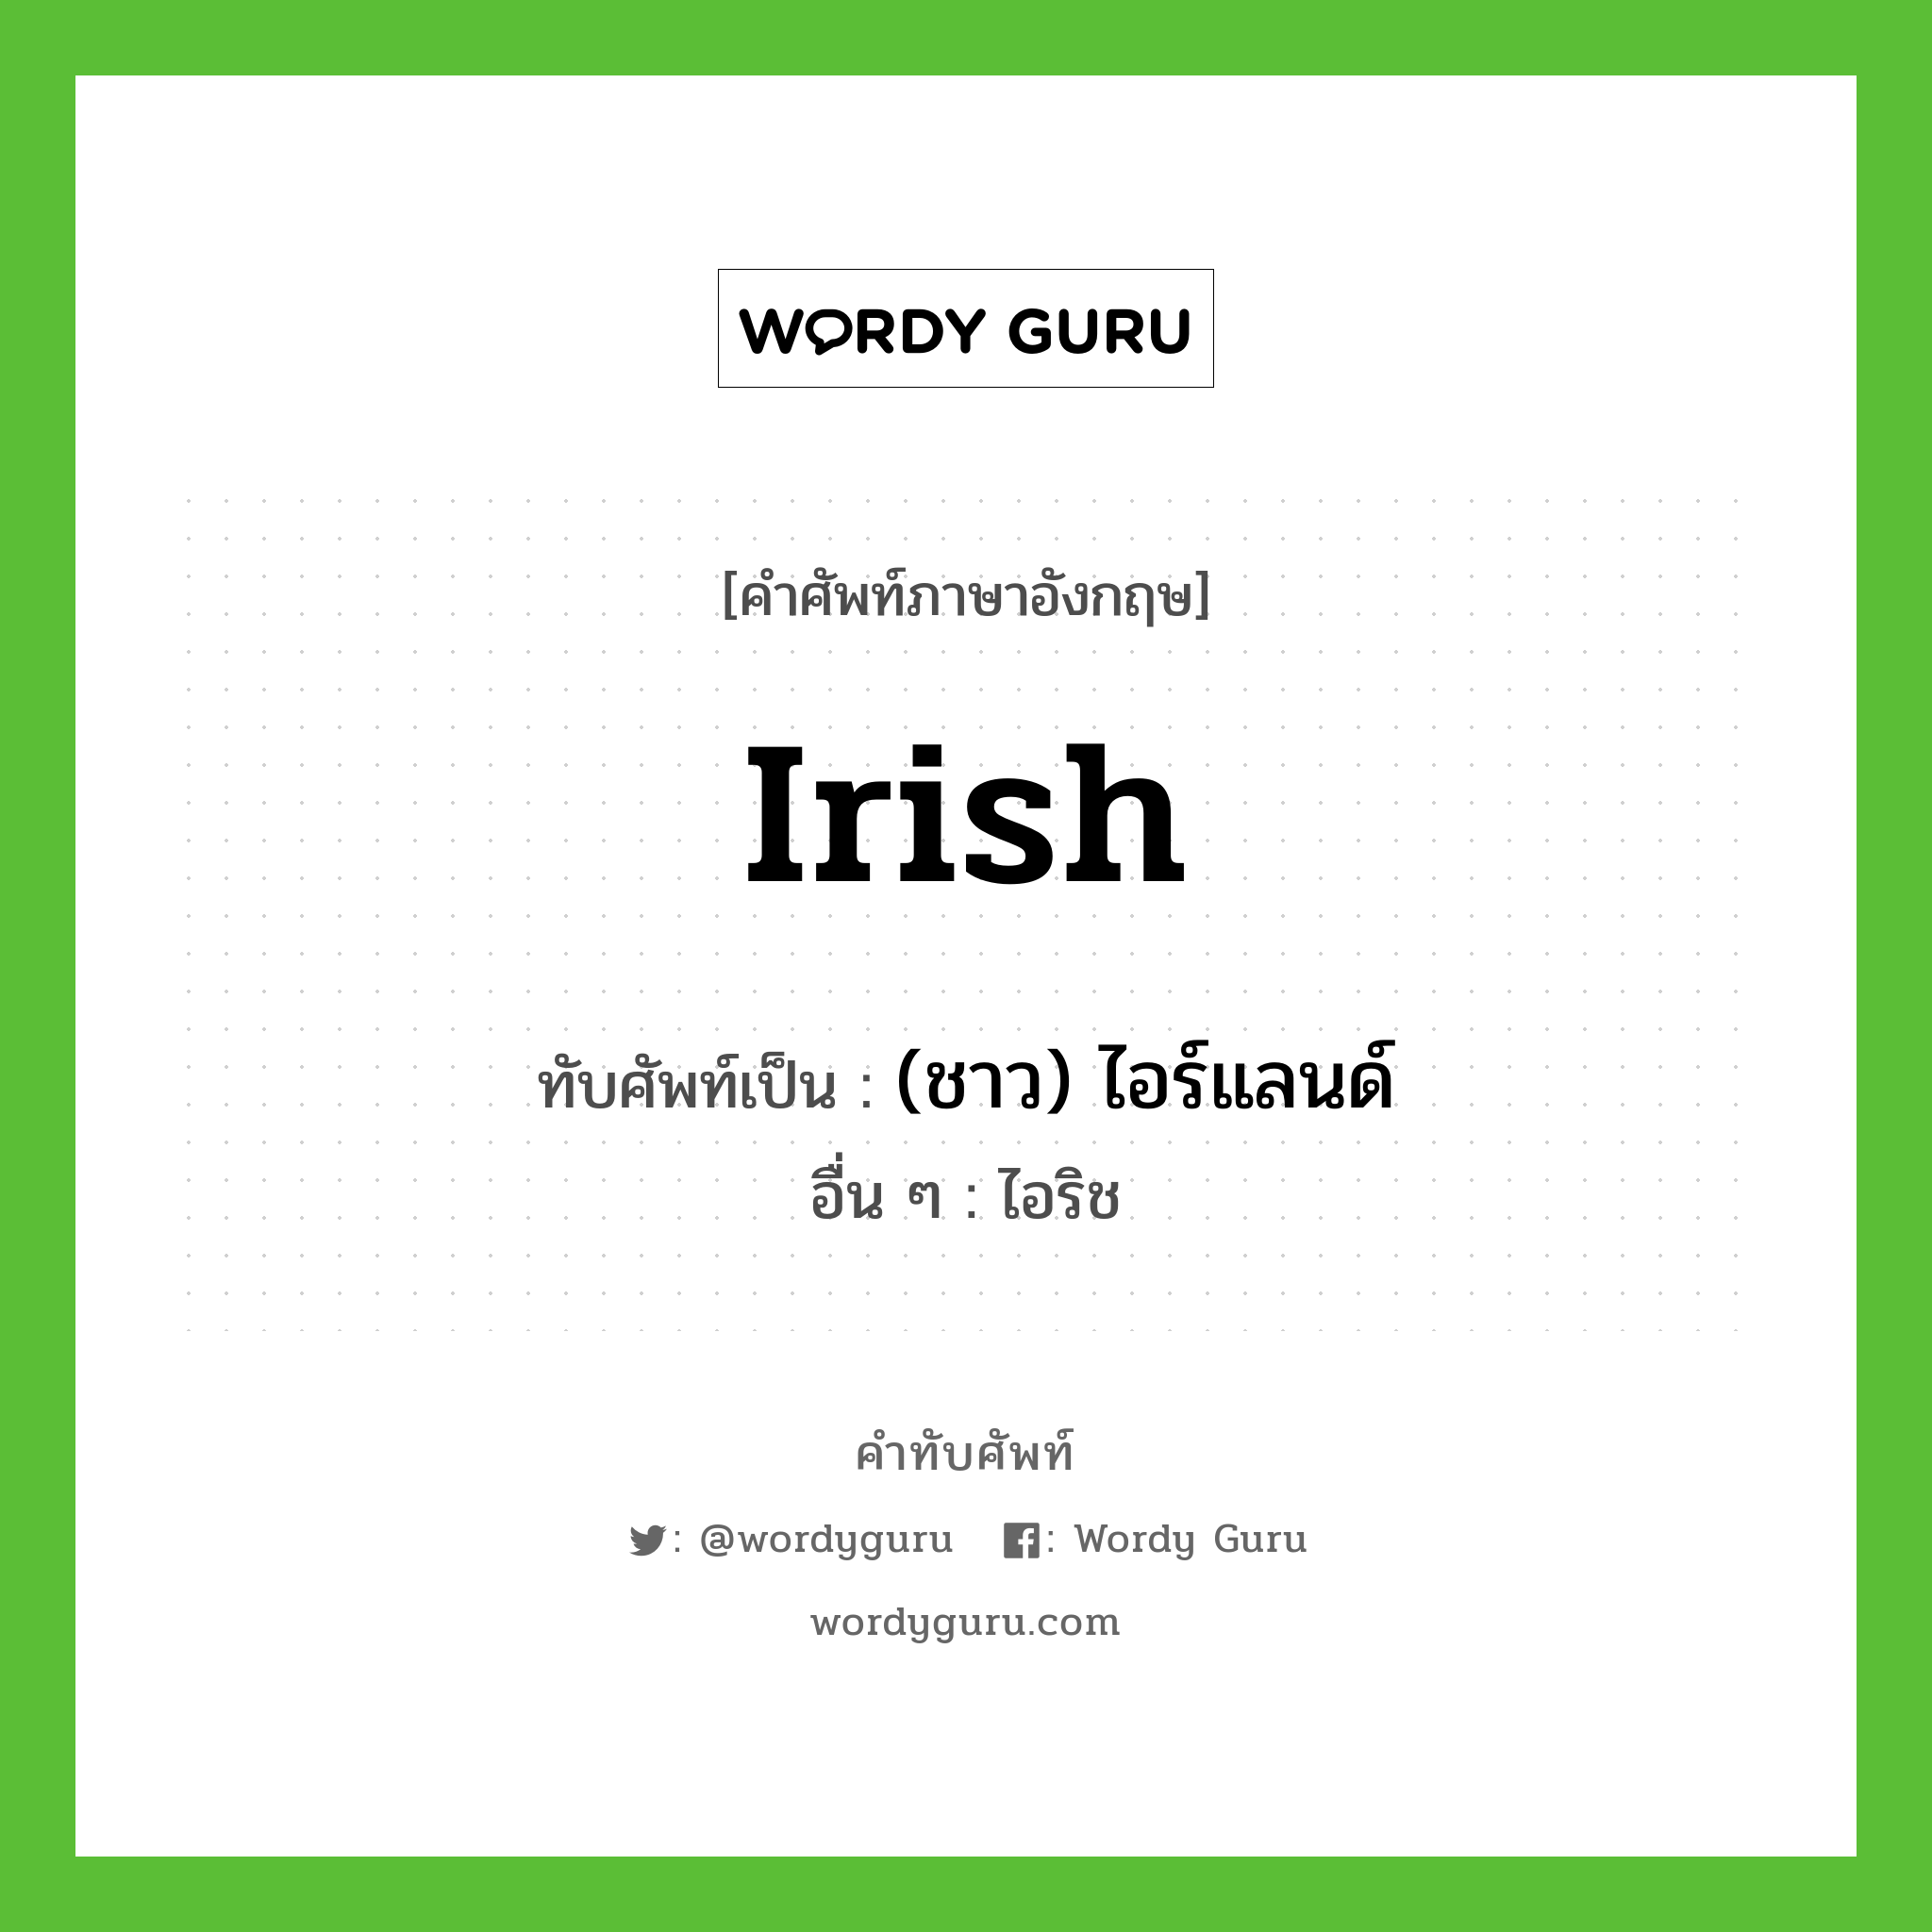 (ชาว) ไอร์แลนด์ เขียนอย่างไร?, คำศัพท์ภาษาอังกฤษ (ชาว) ไอร์แลนด์ ทับศัพท์เป็น Irish อื่น ๆ ไอริช